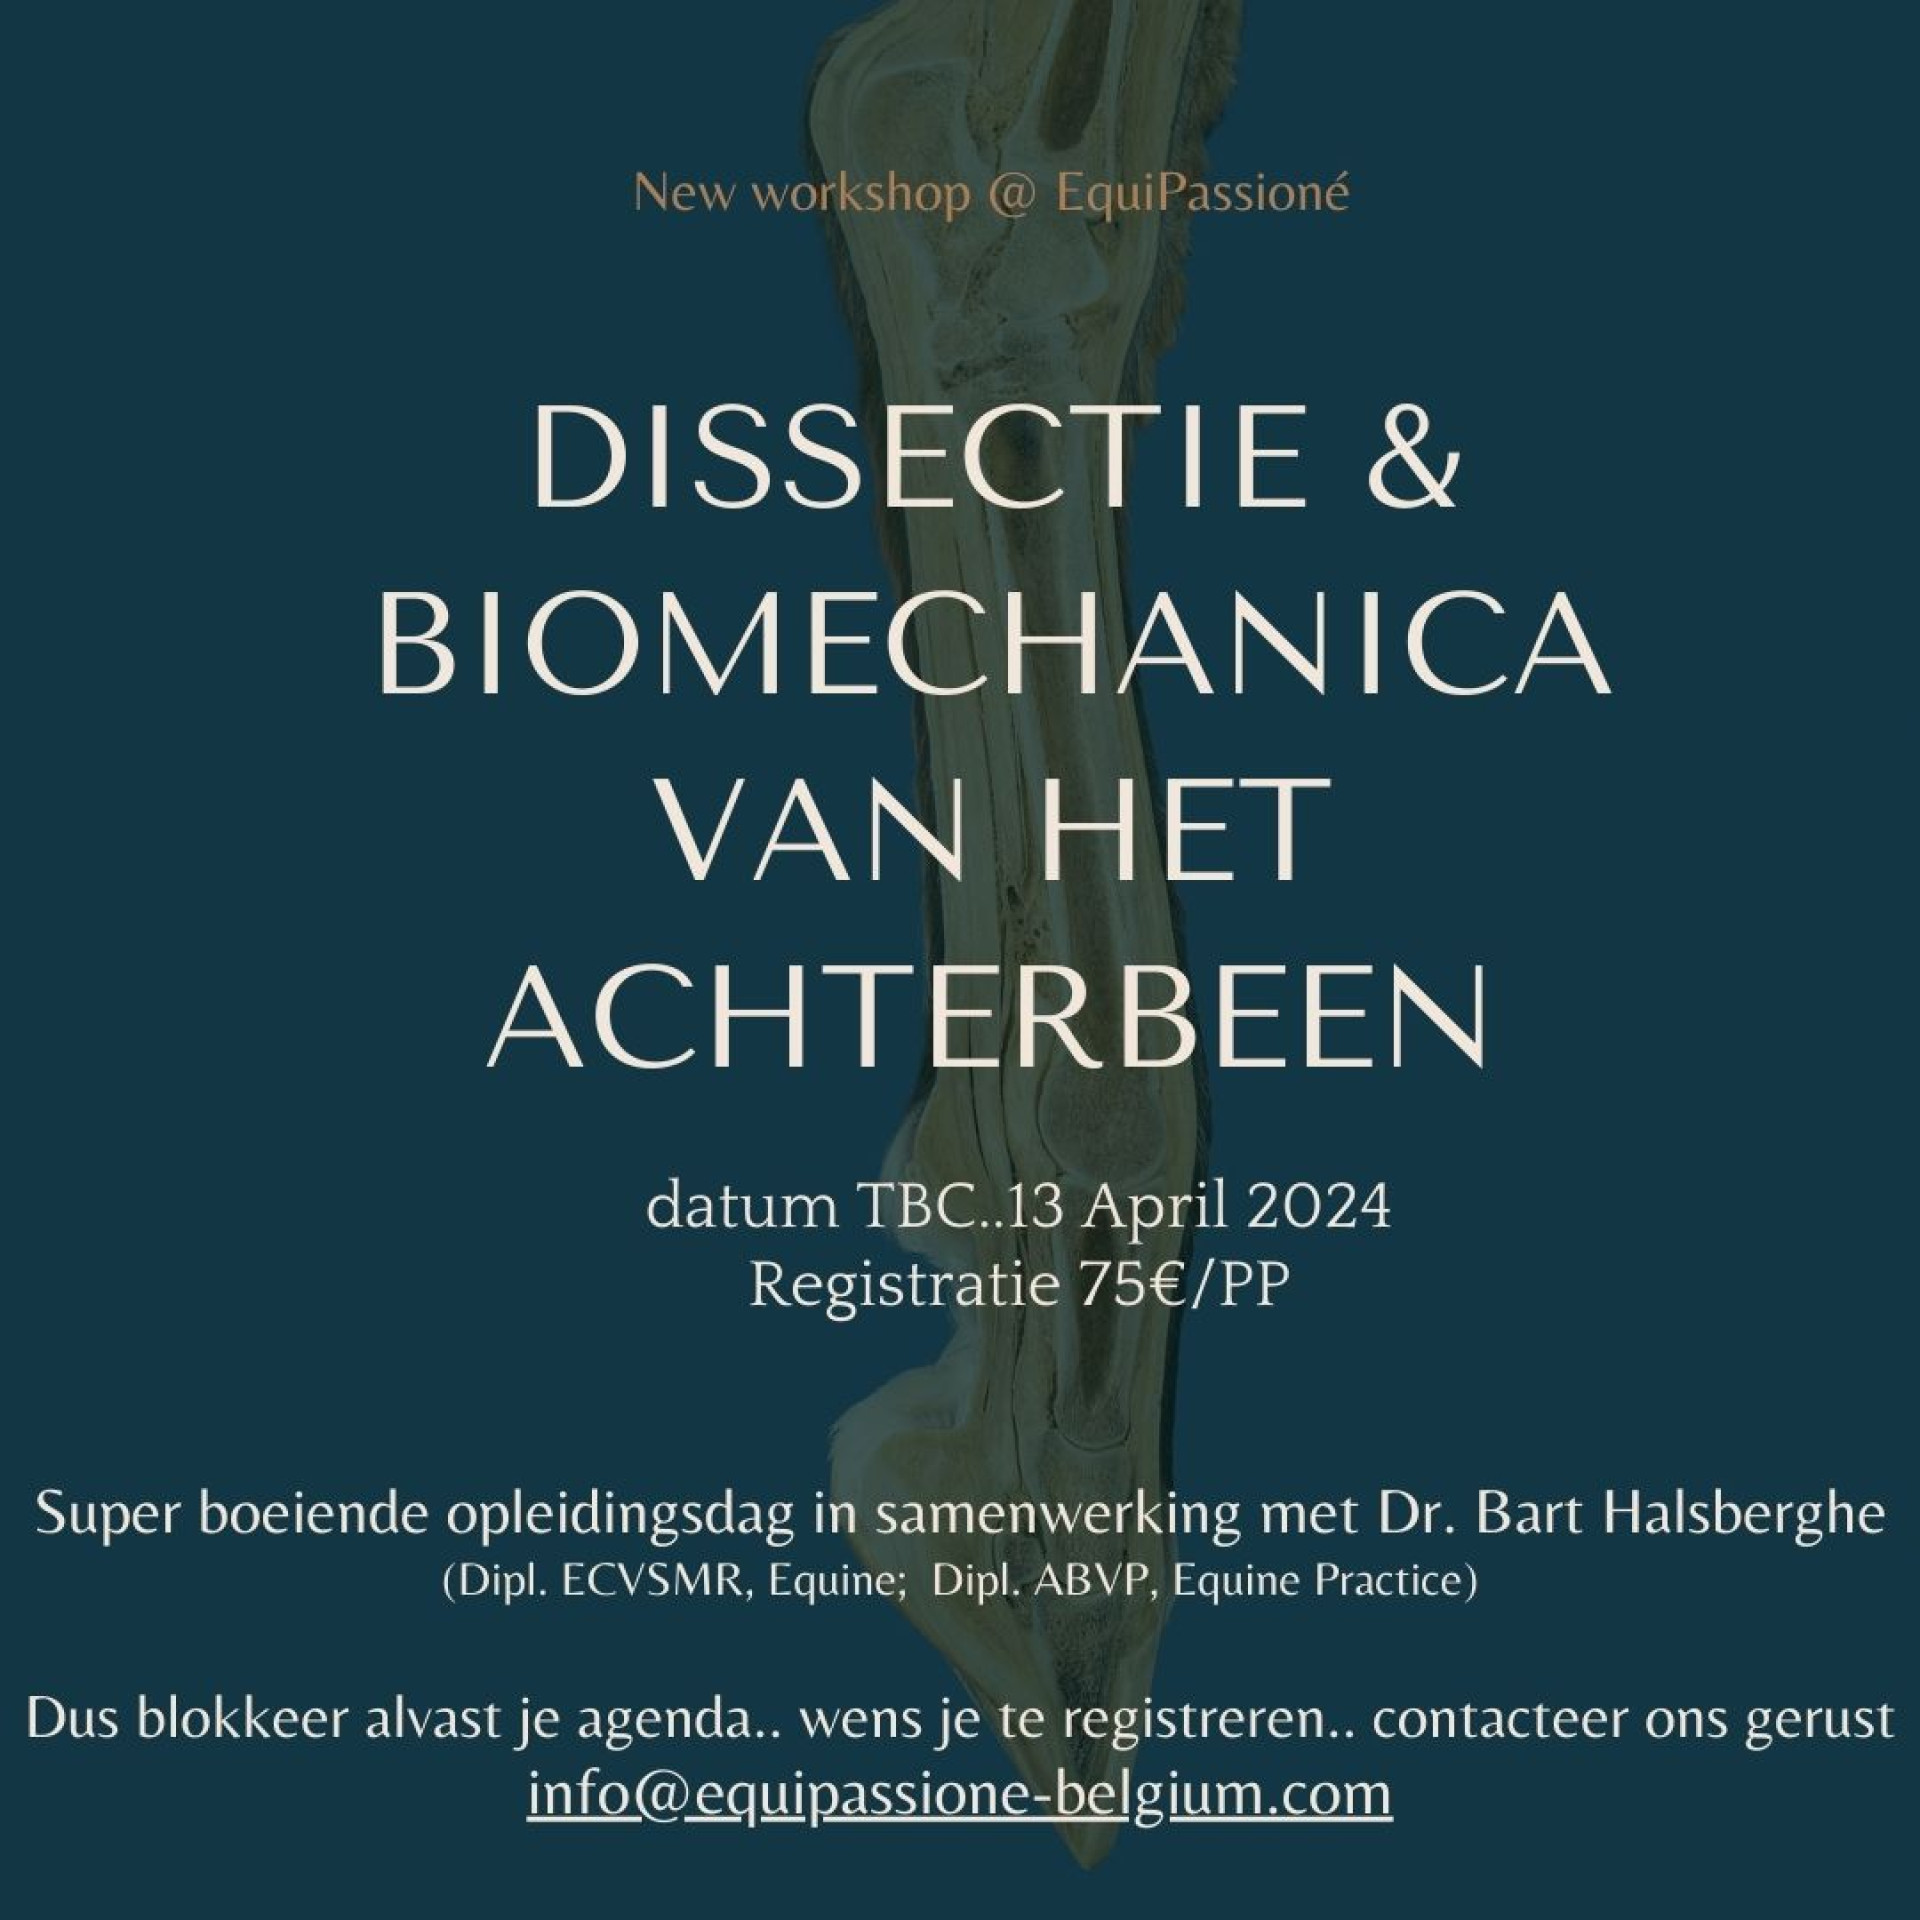 Dissectie & Biomechanica van het achterbeen